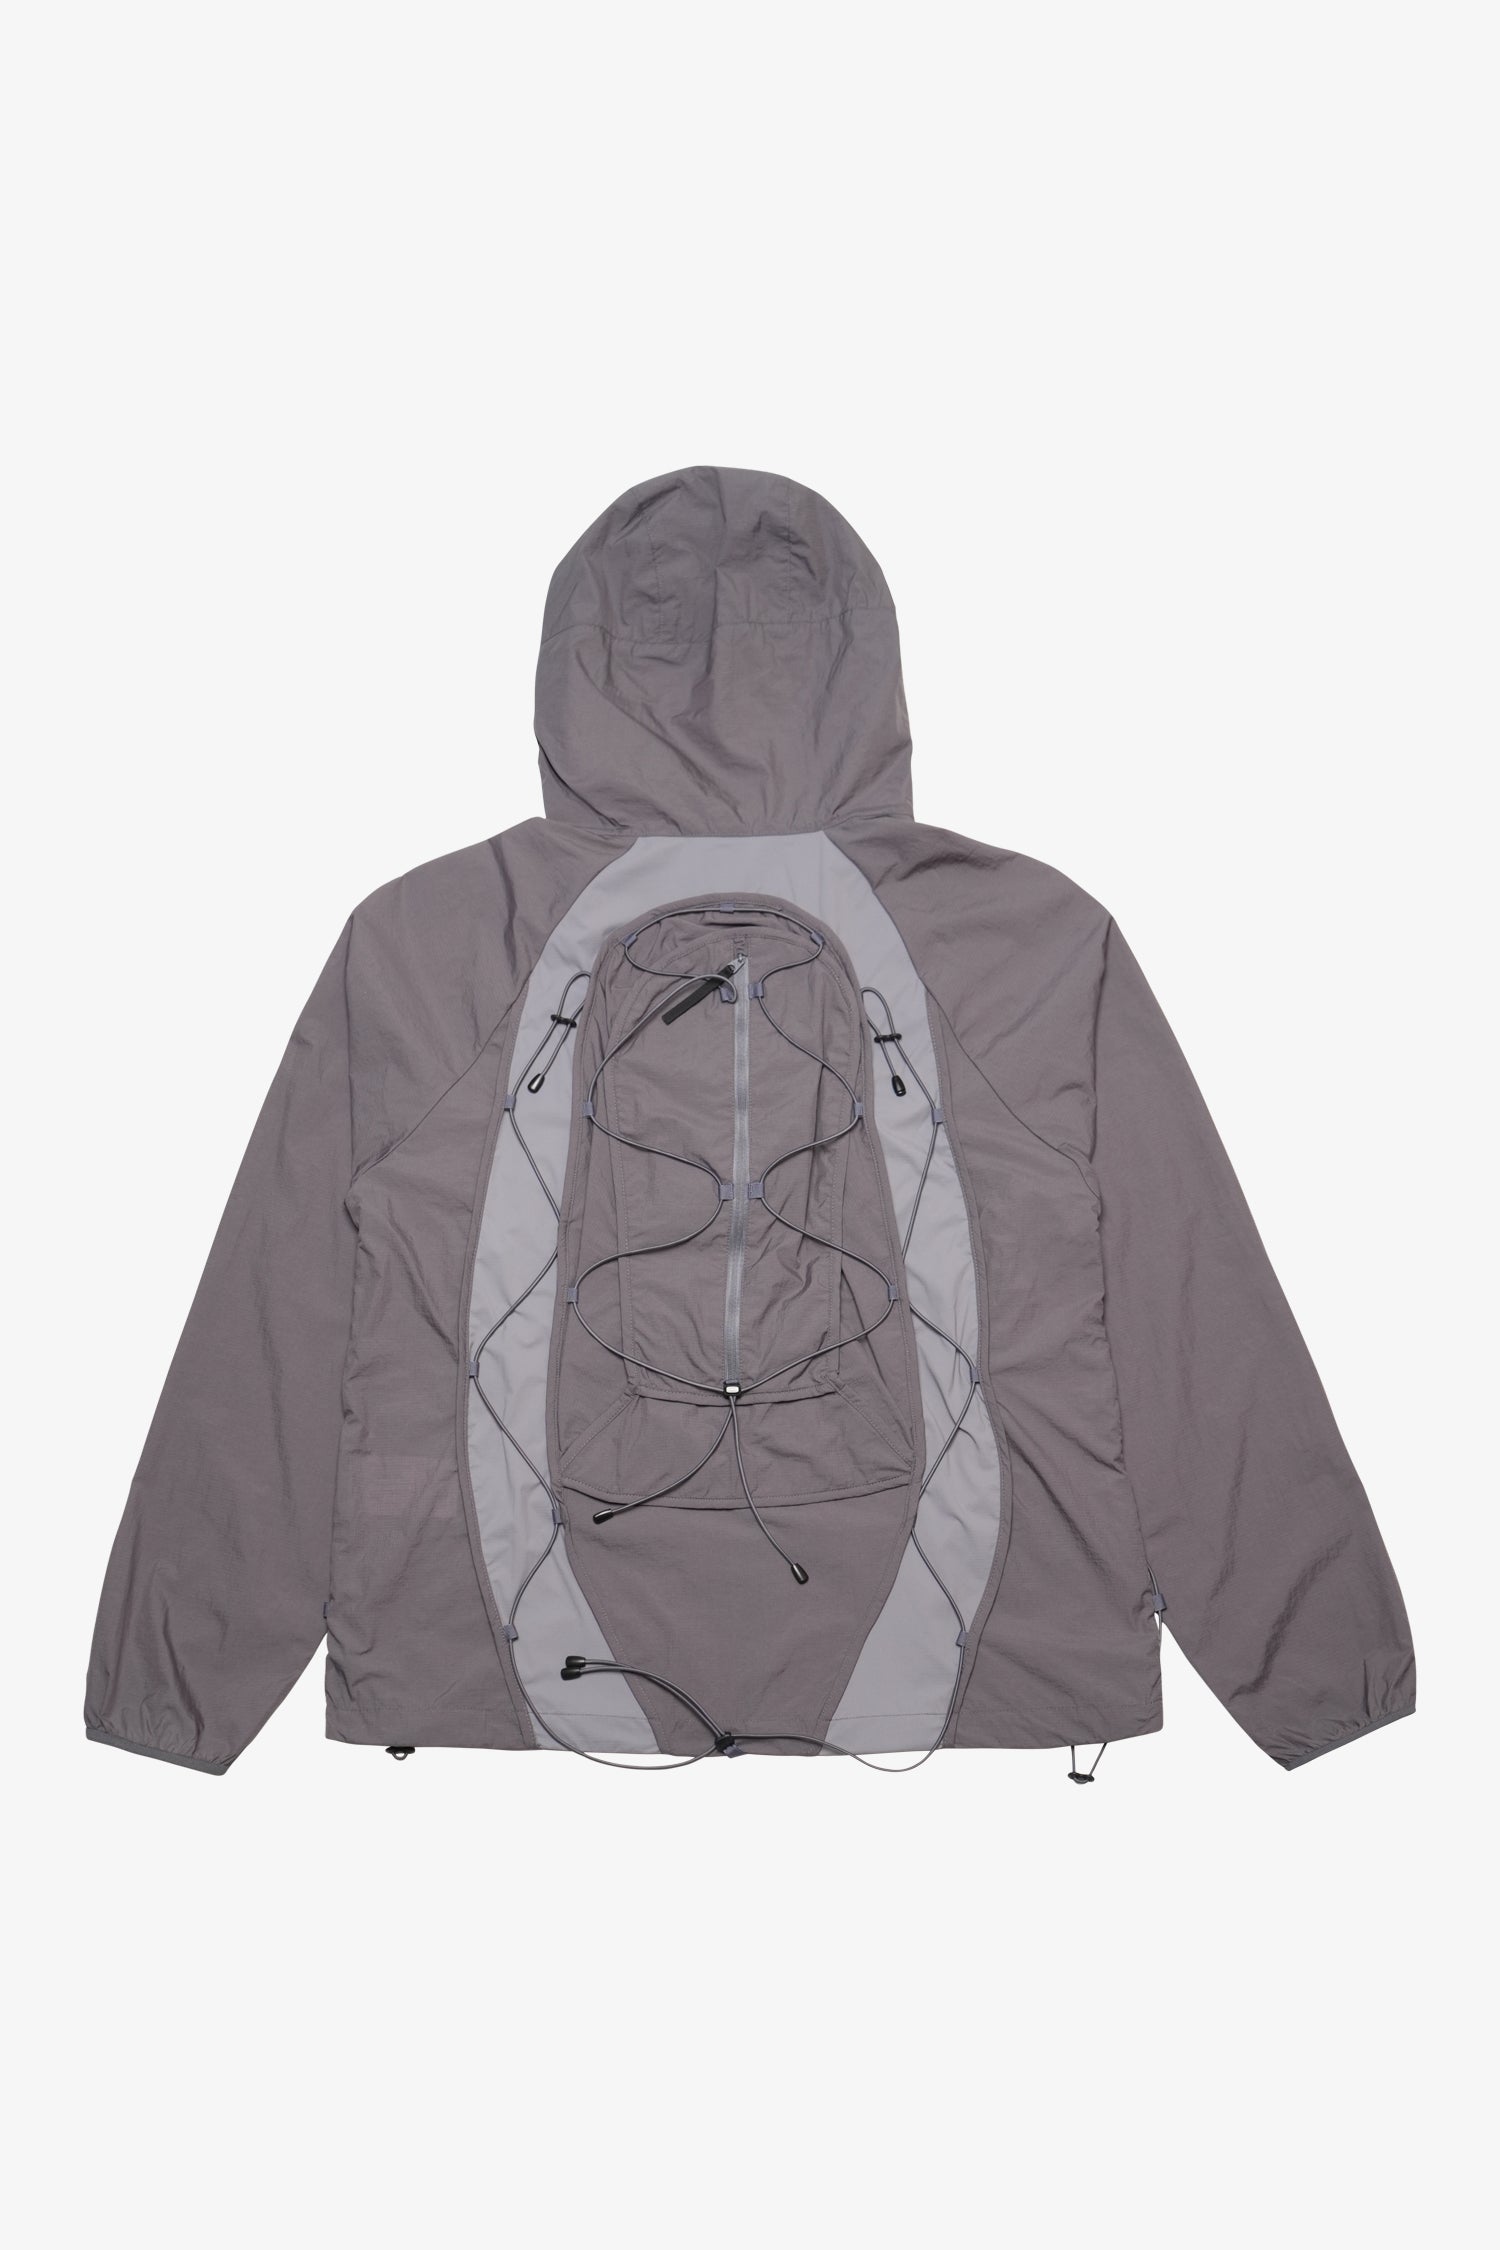 Backpack Jacket- Selectshop FRAME